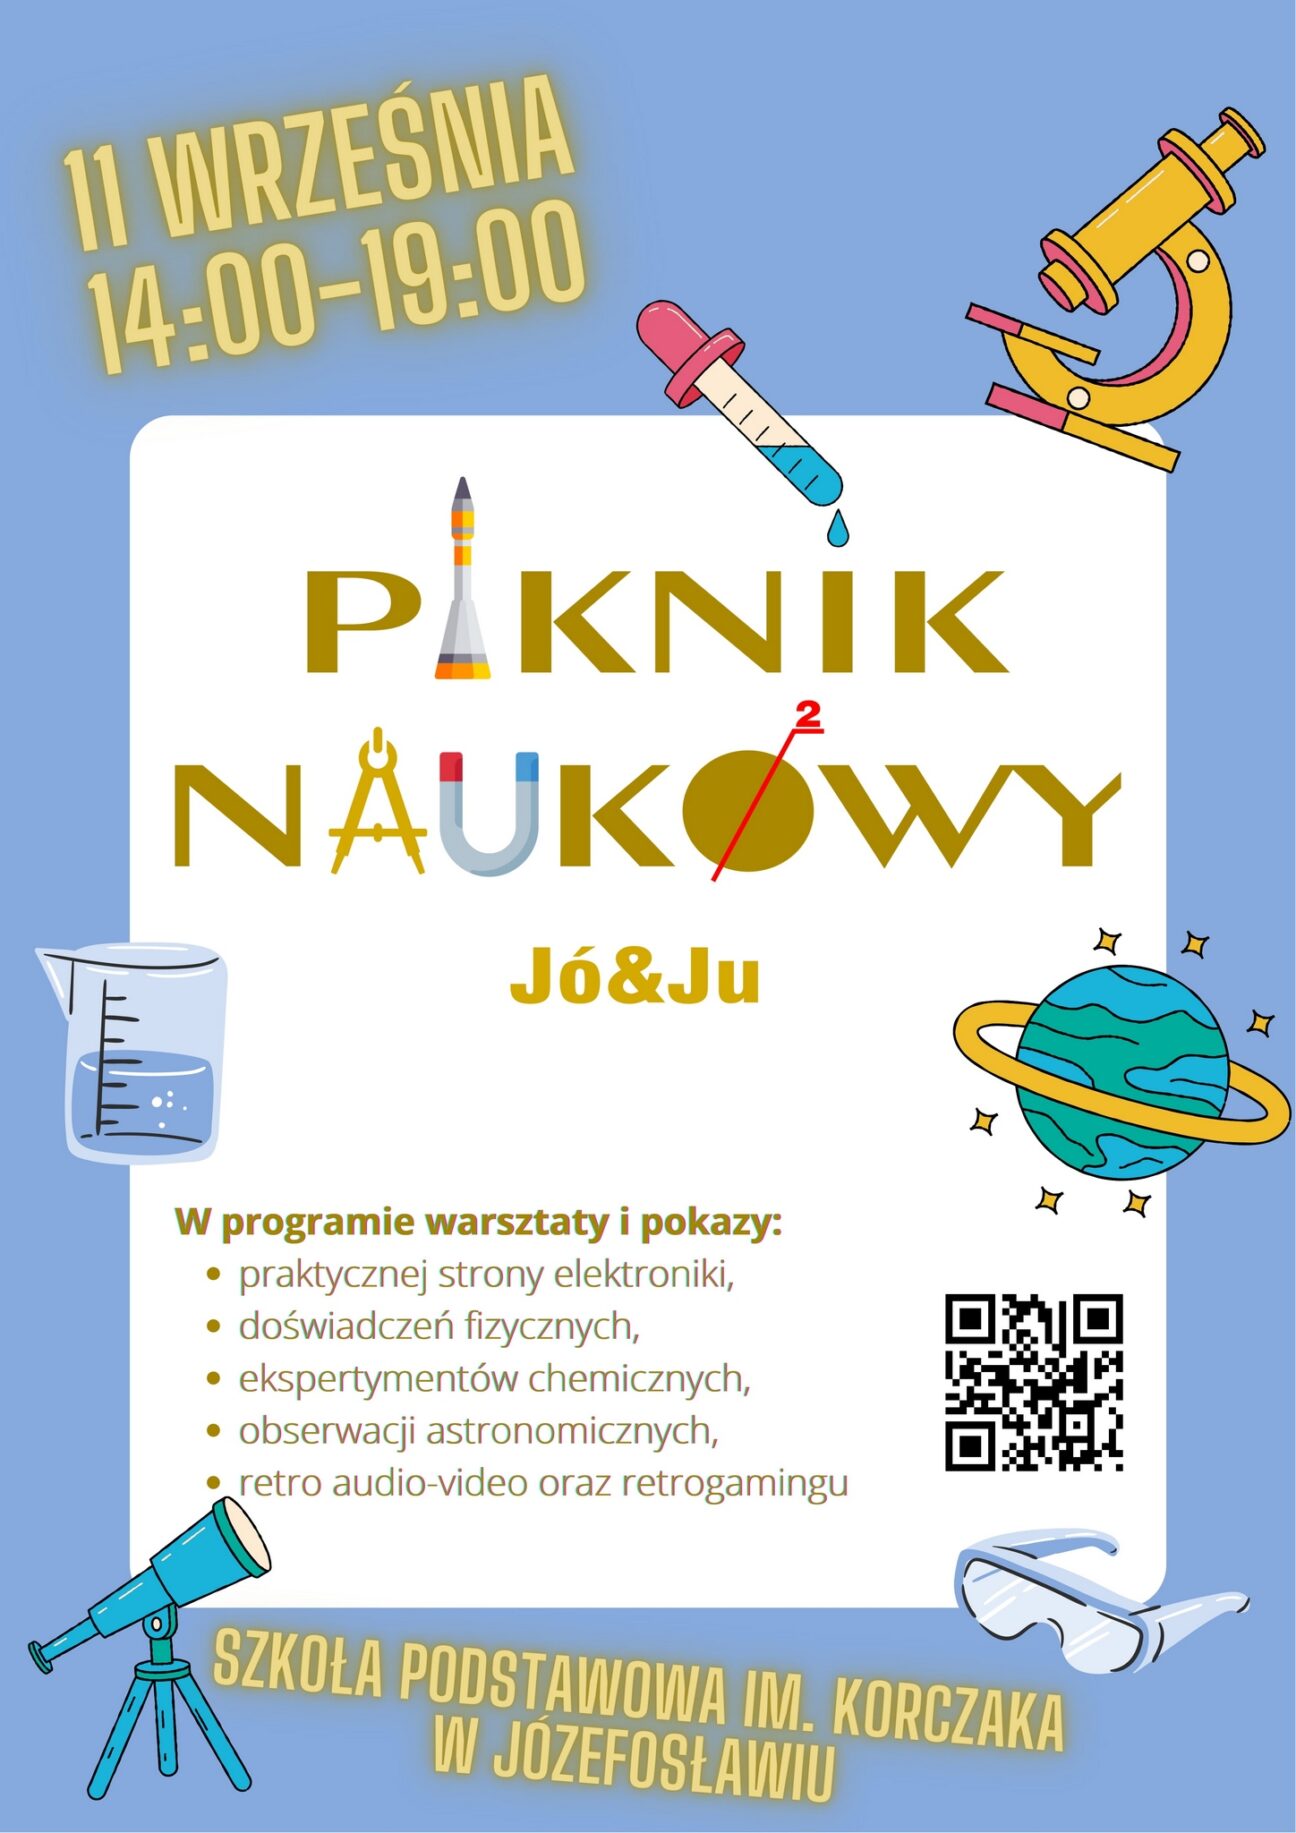 Piknik Naukowy Józefosław i Julianów Jó&Ju